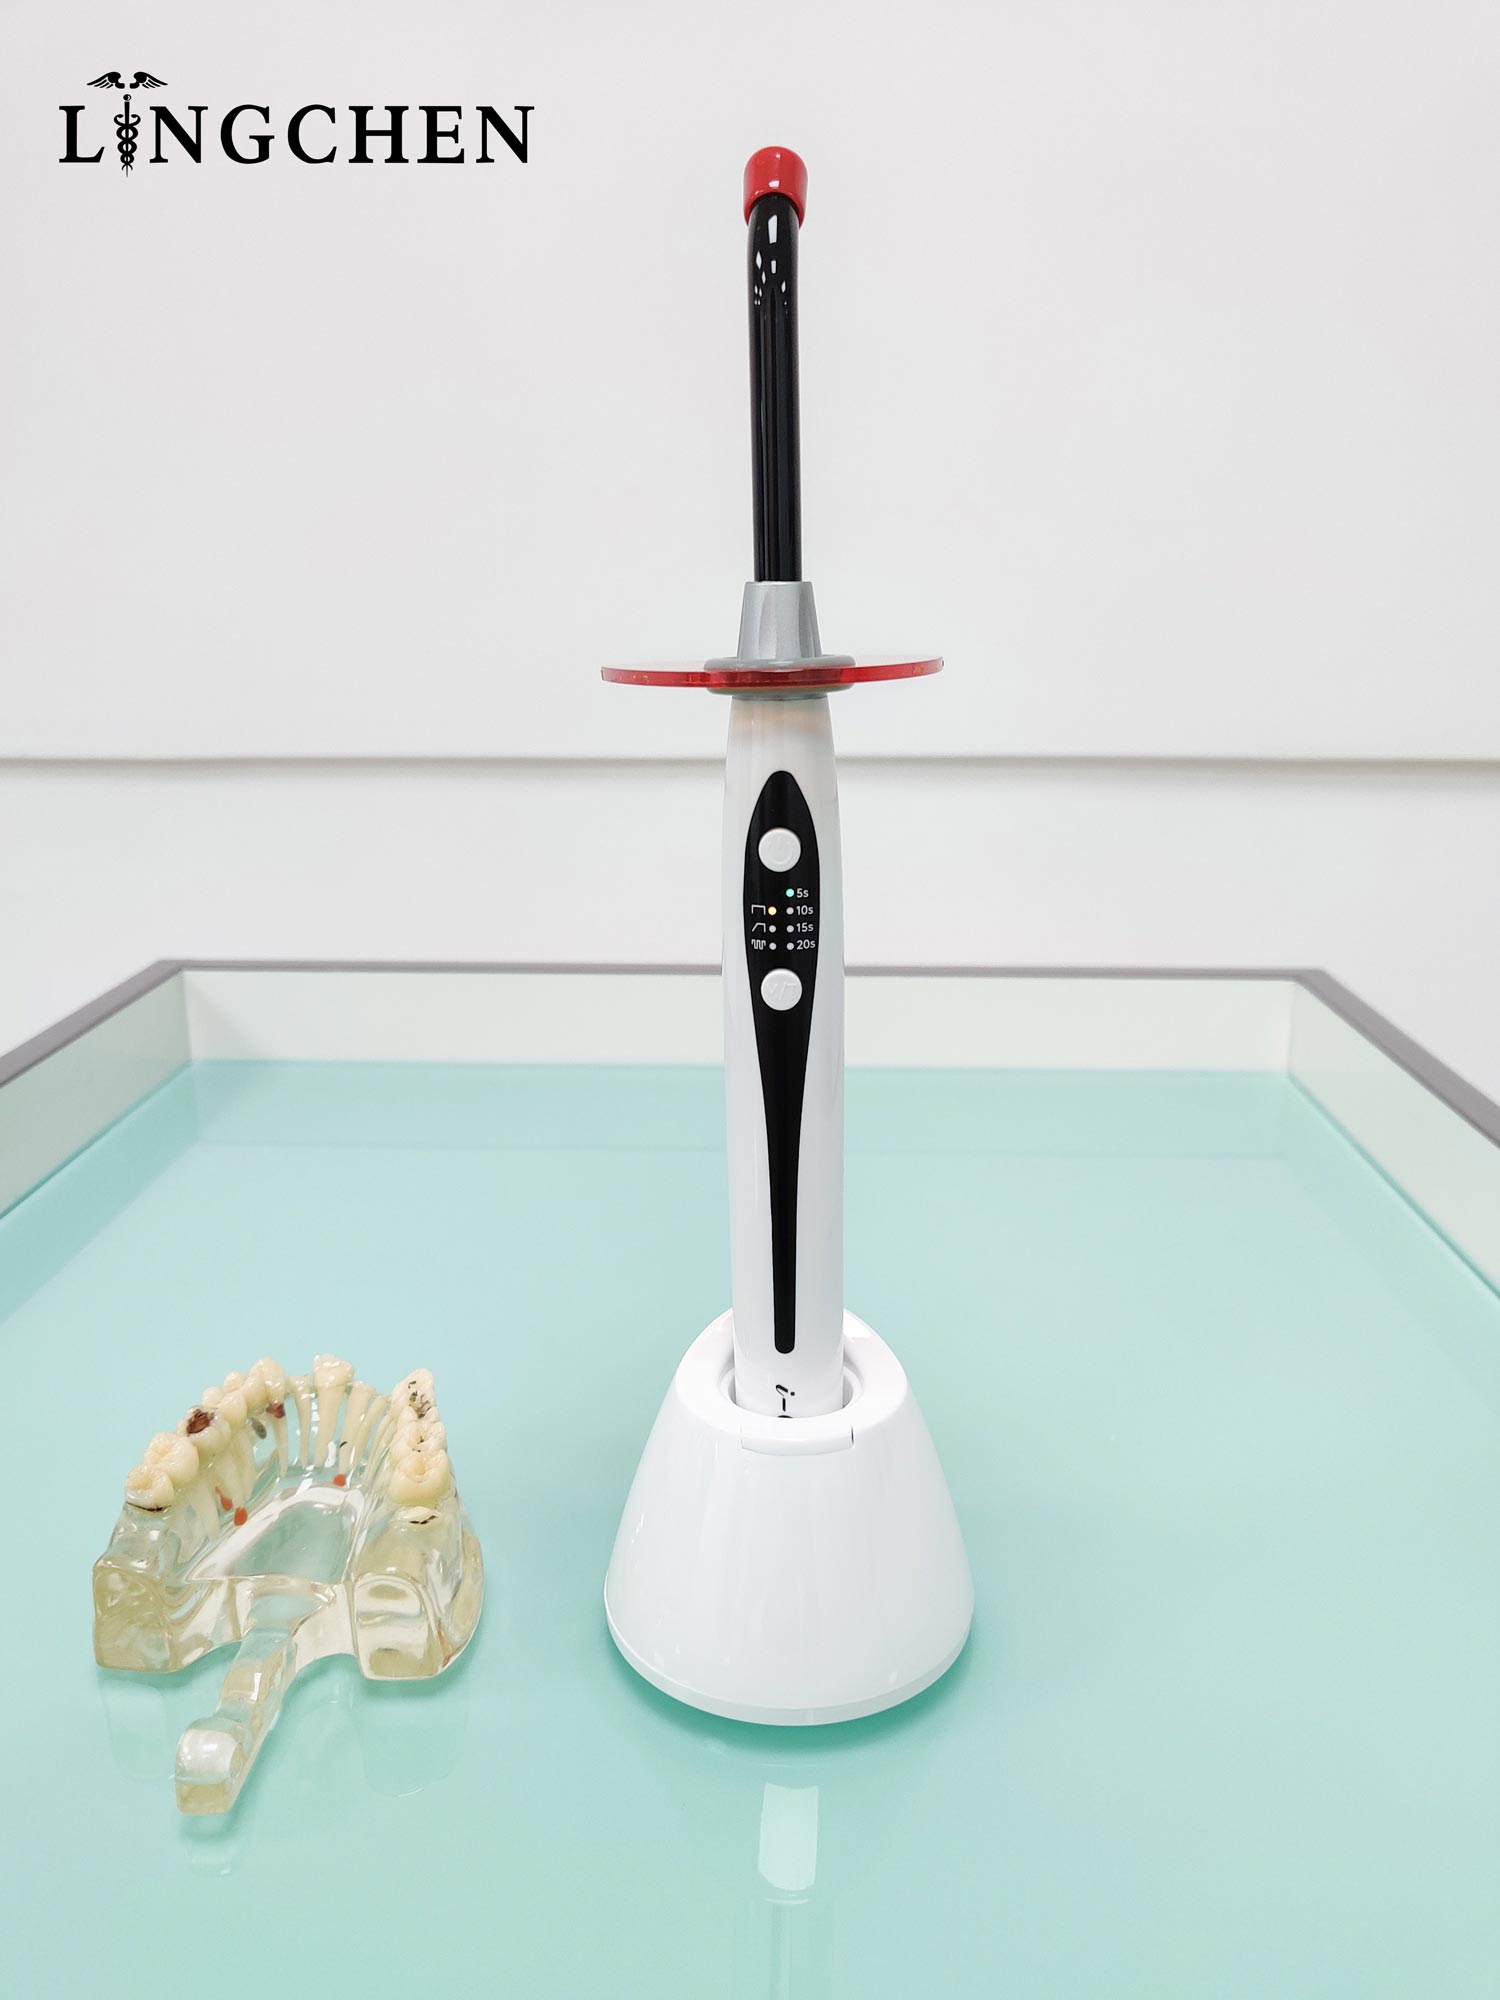 I-cure Dental LED Curling Light： 3 Modus: Voll / Puls / Ramp Intensitéit: 1800Lux FOLight Guide: 8mm (Dia.) Liicht Wellelängt: 420-480nm